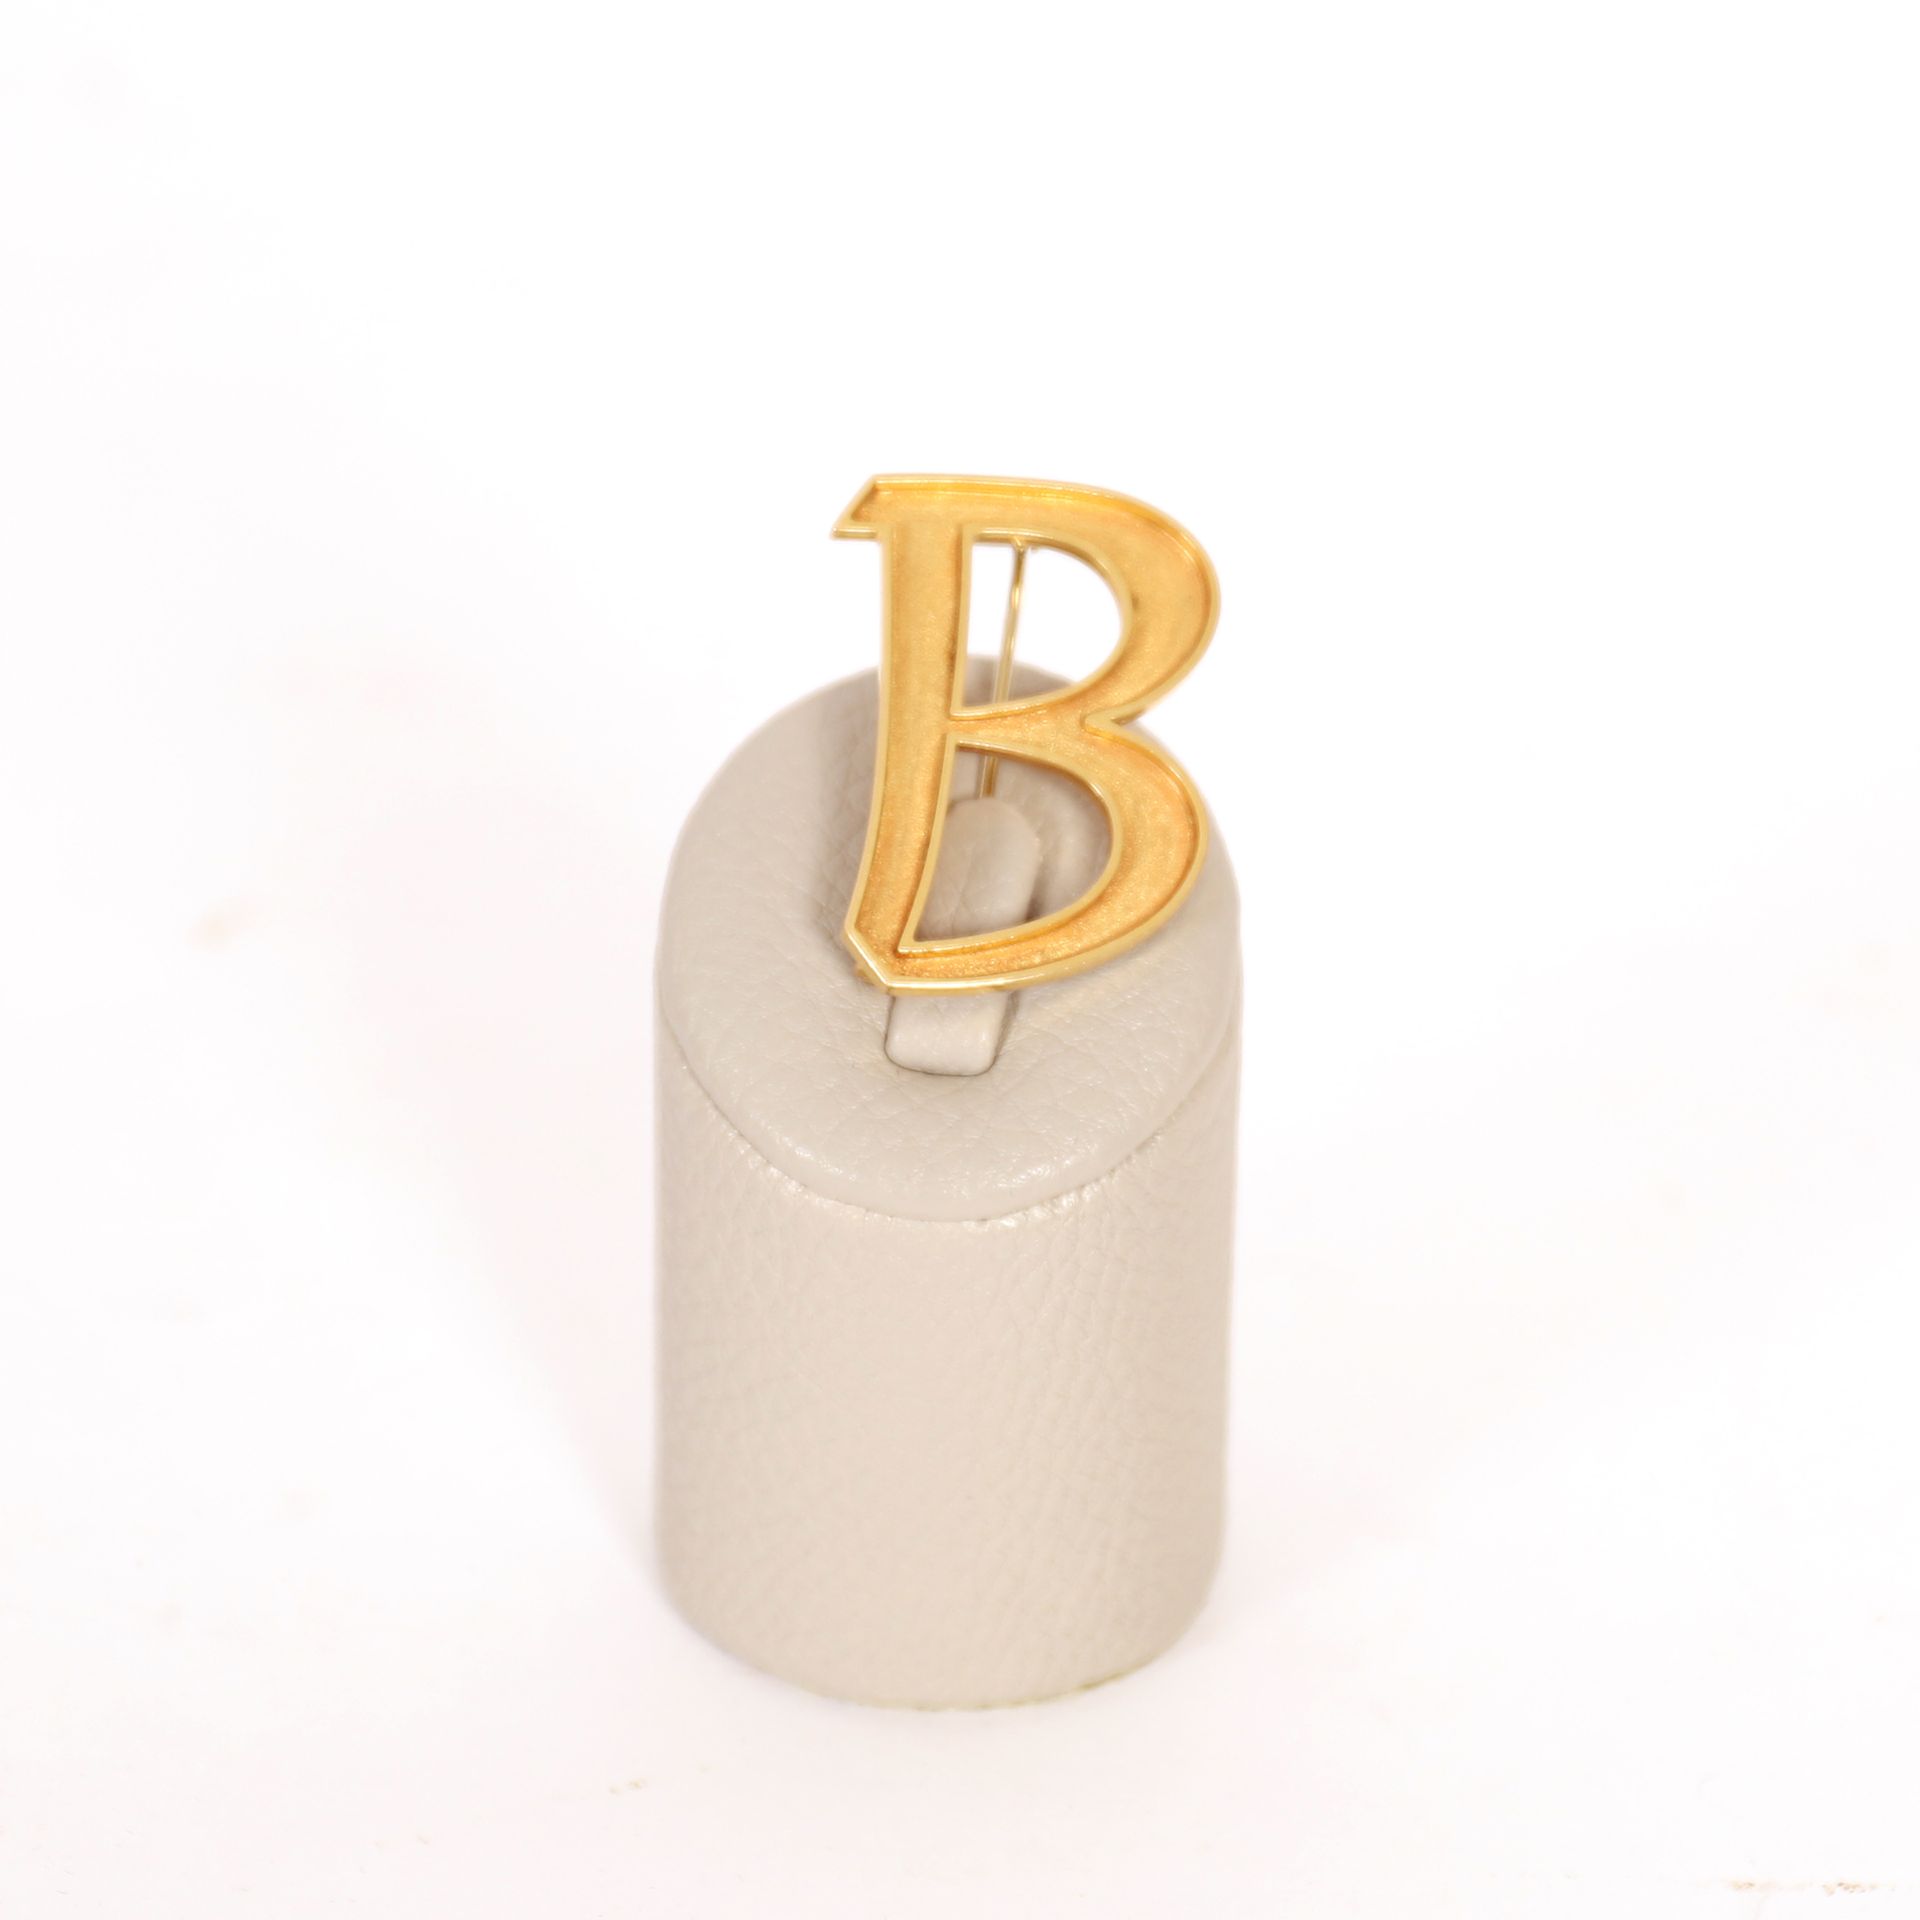 Null 黄金 "B "型胸针

高：4厘米

重量：12克